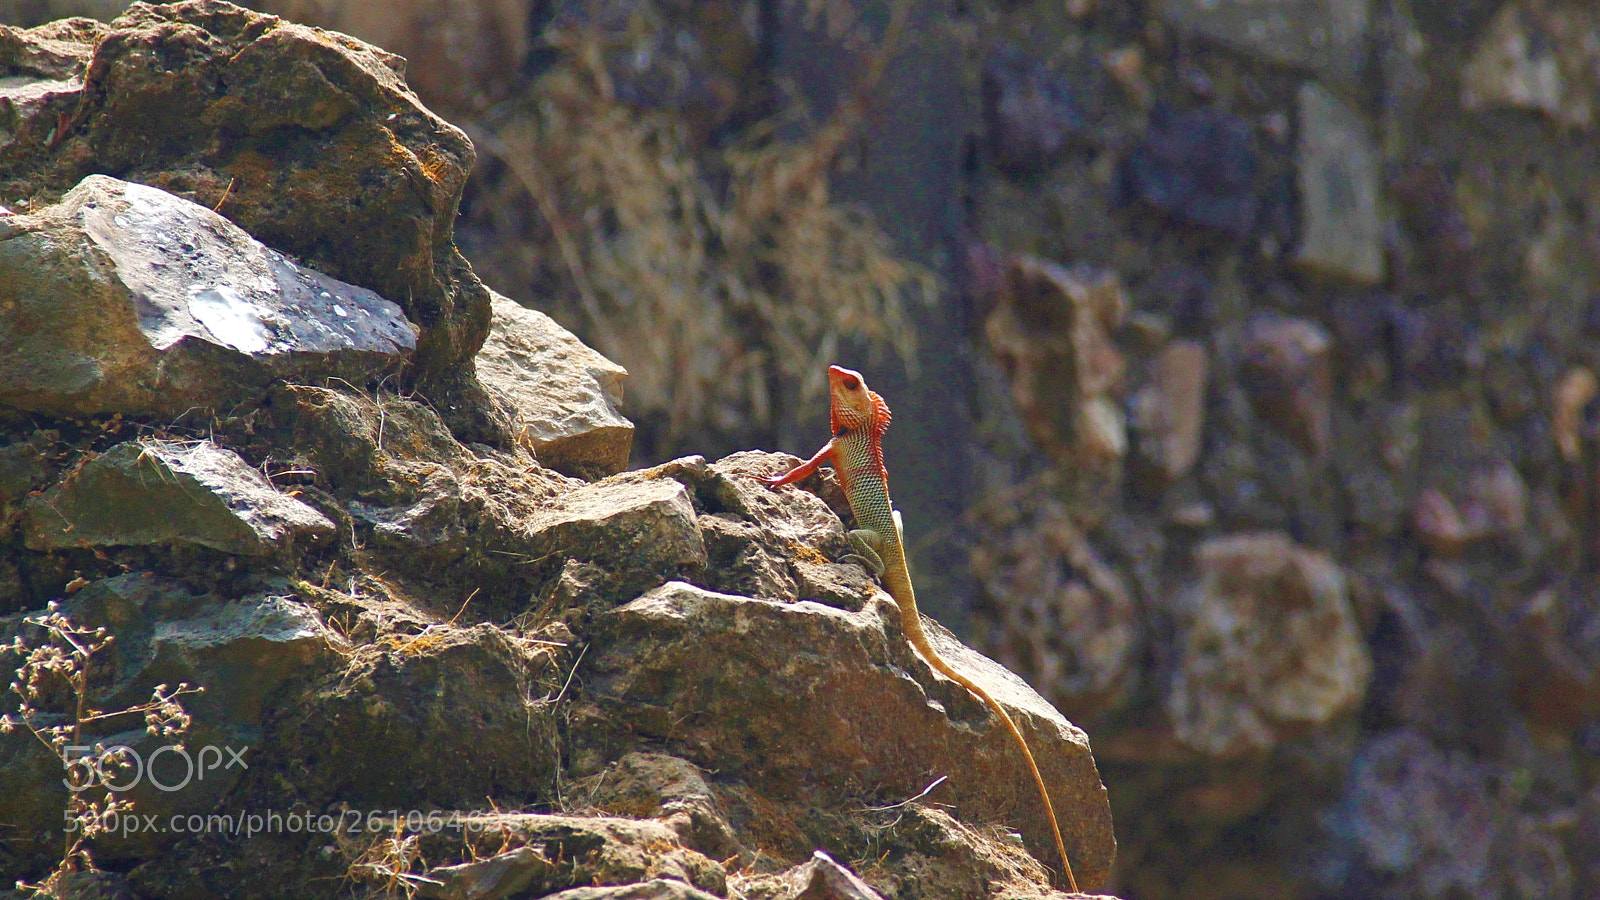 Canon EOS 60D sample photo. Climbing lizard photography